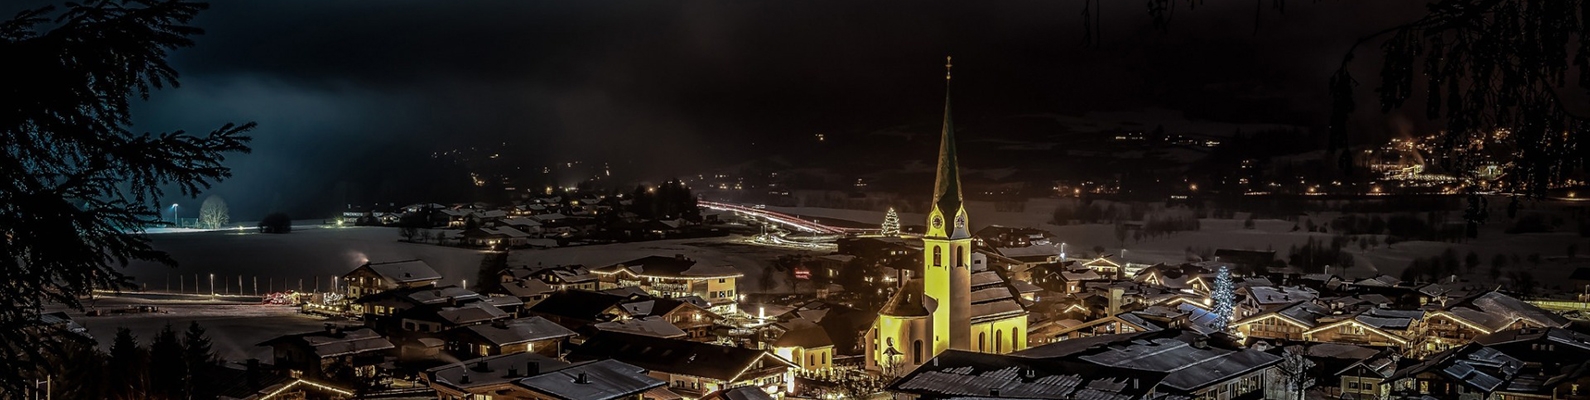 Эльмау, церковь, Австрия, ночь, зима, огни